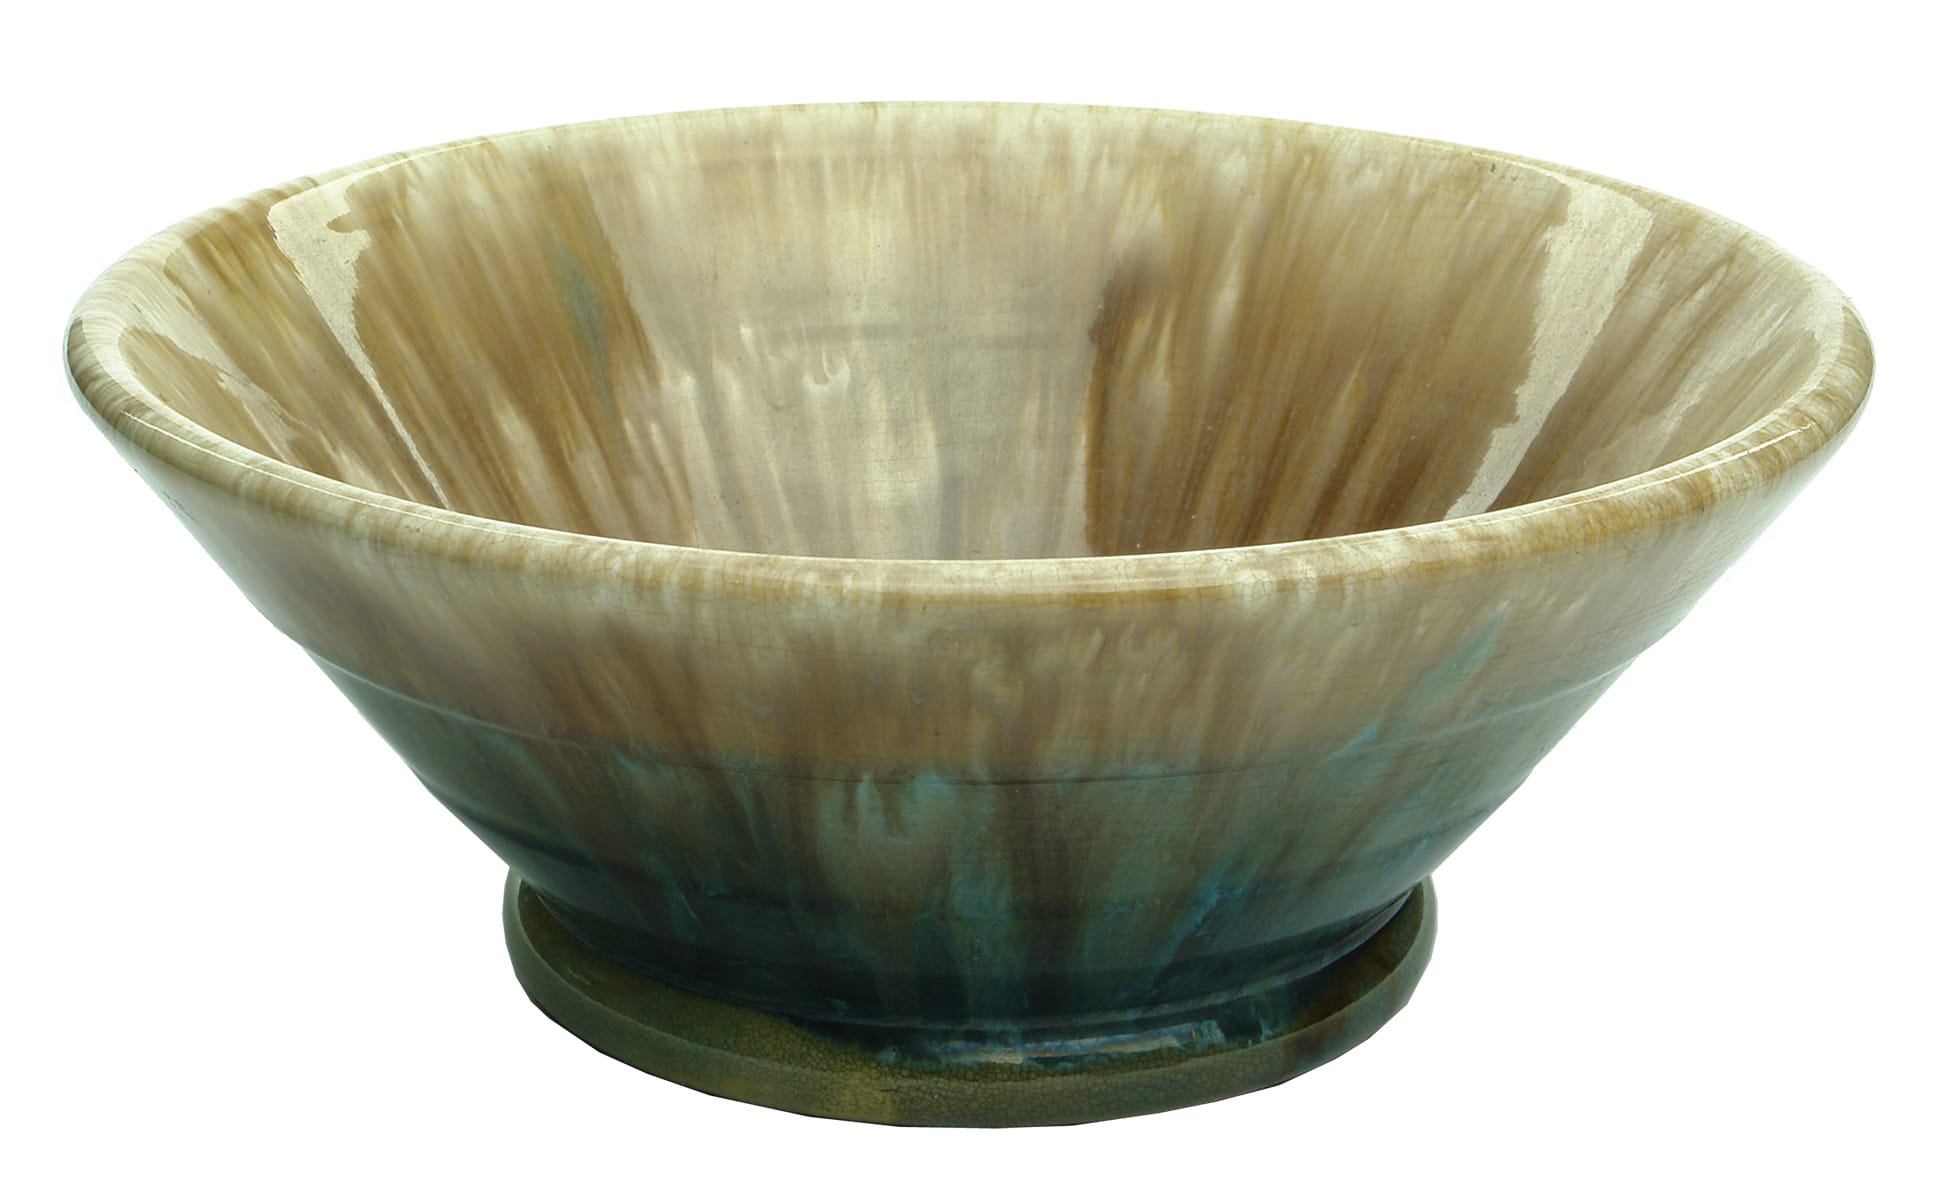 Regal Mashman Pottery Bowl